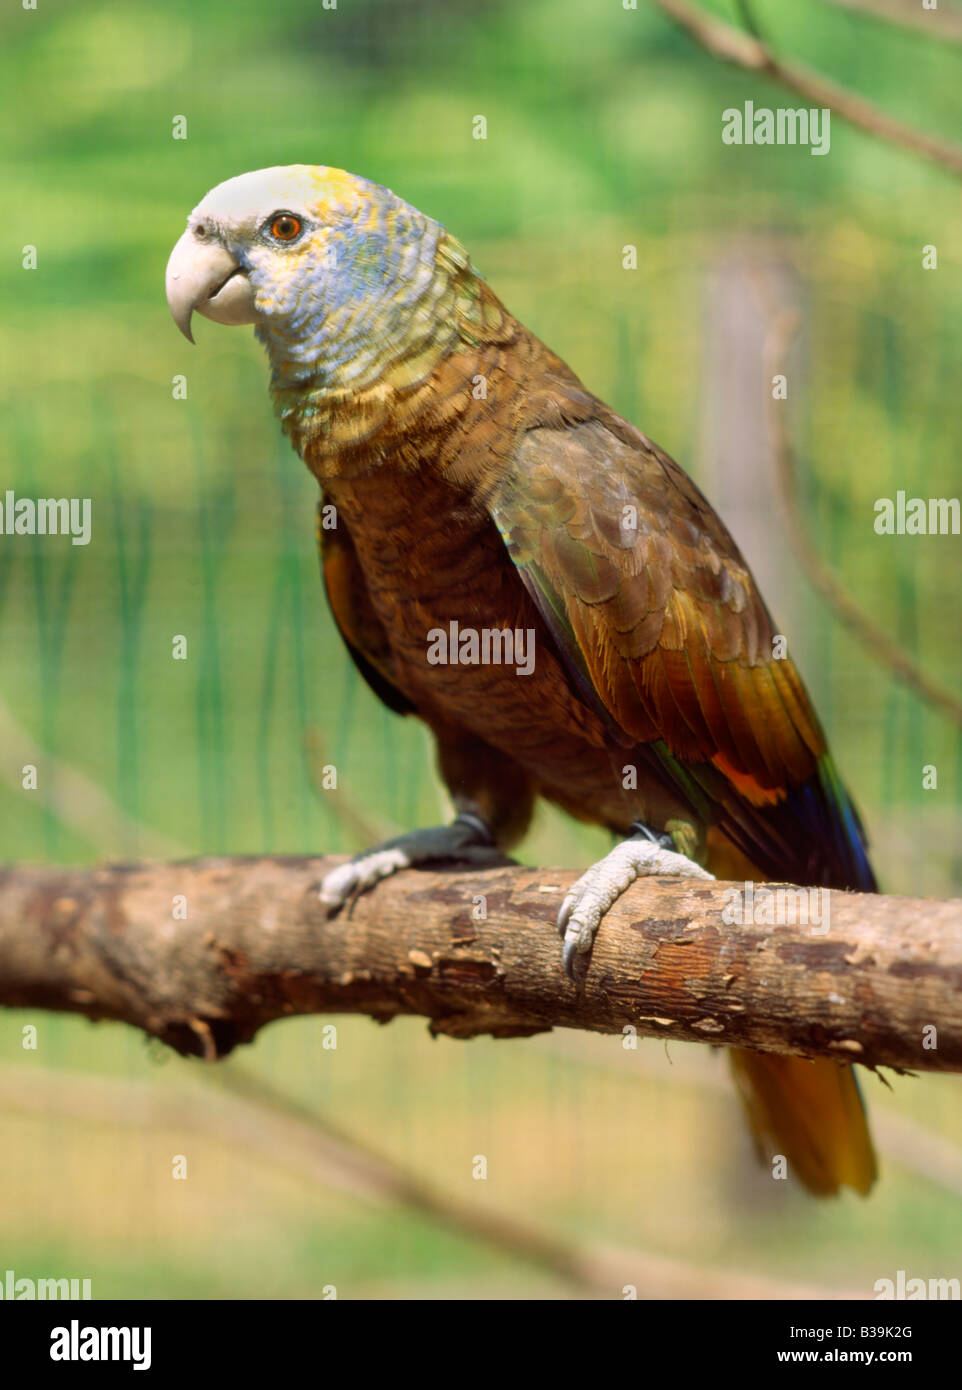 St.Vincent Amazon parrot Stock Photo